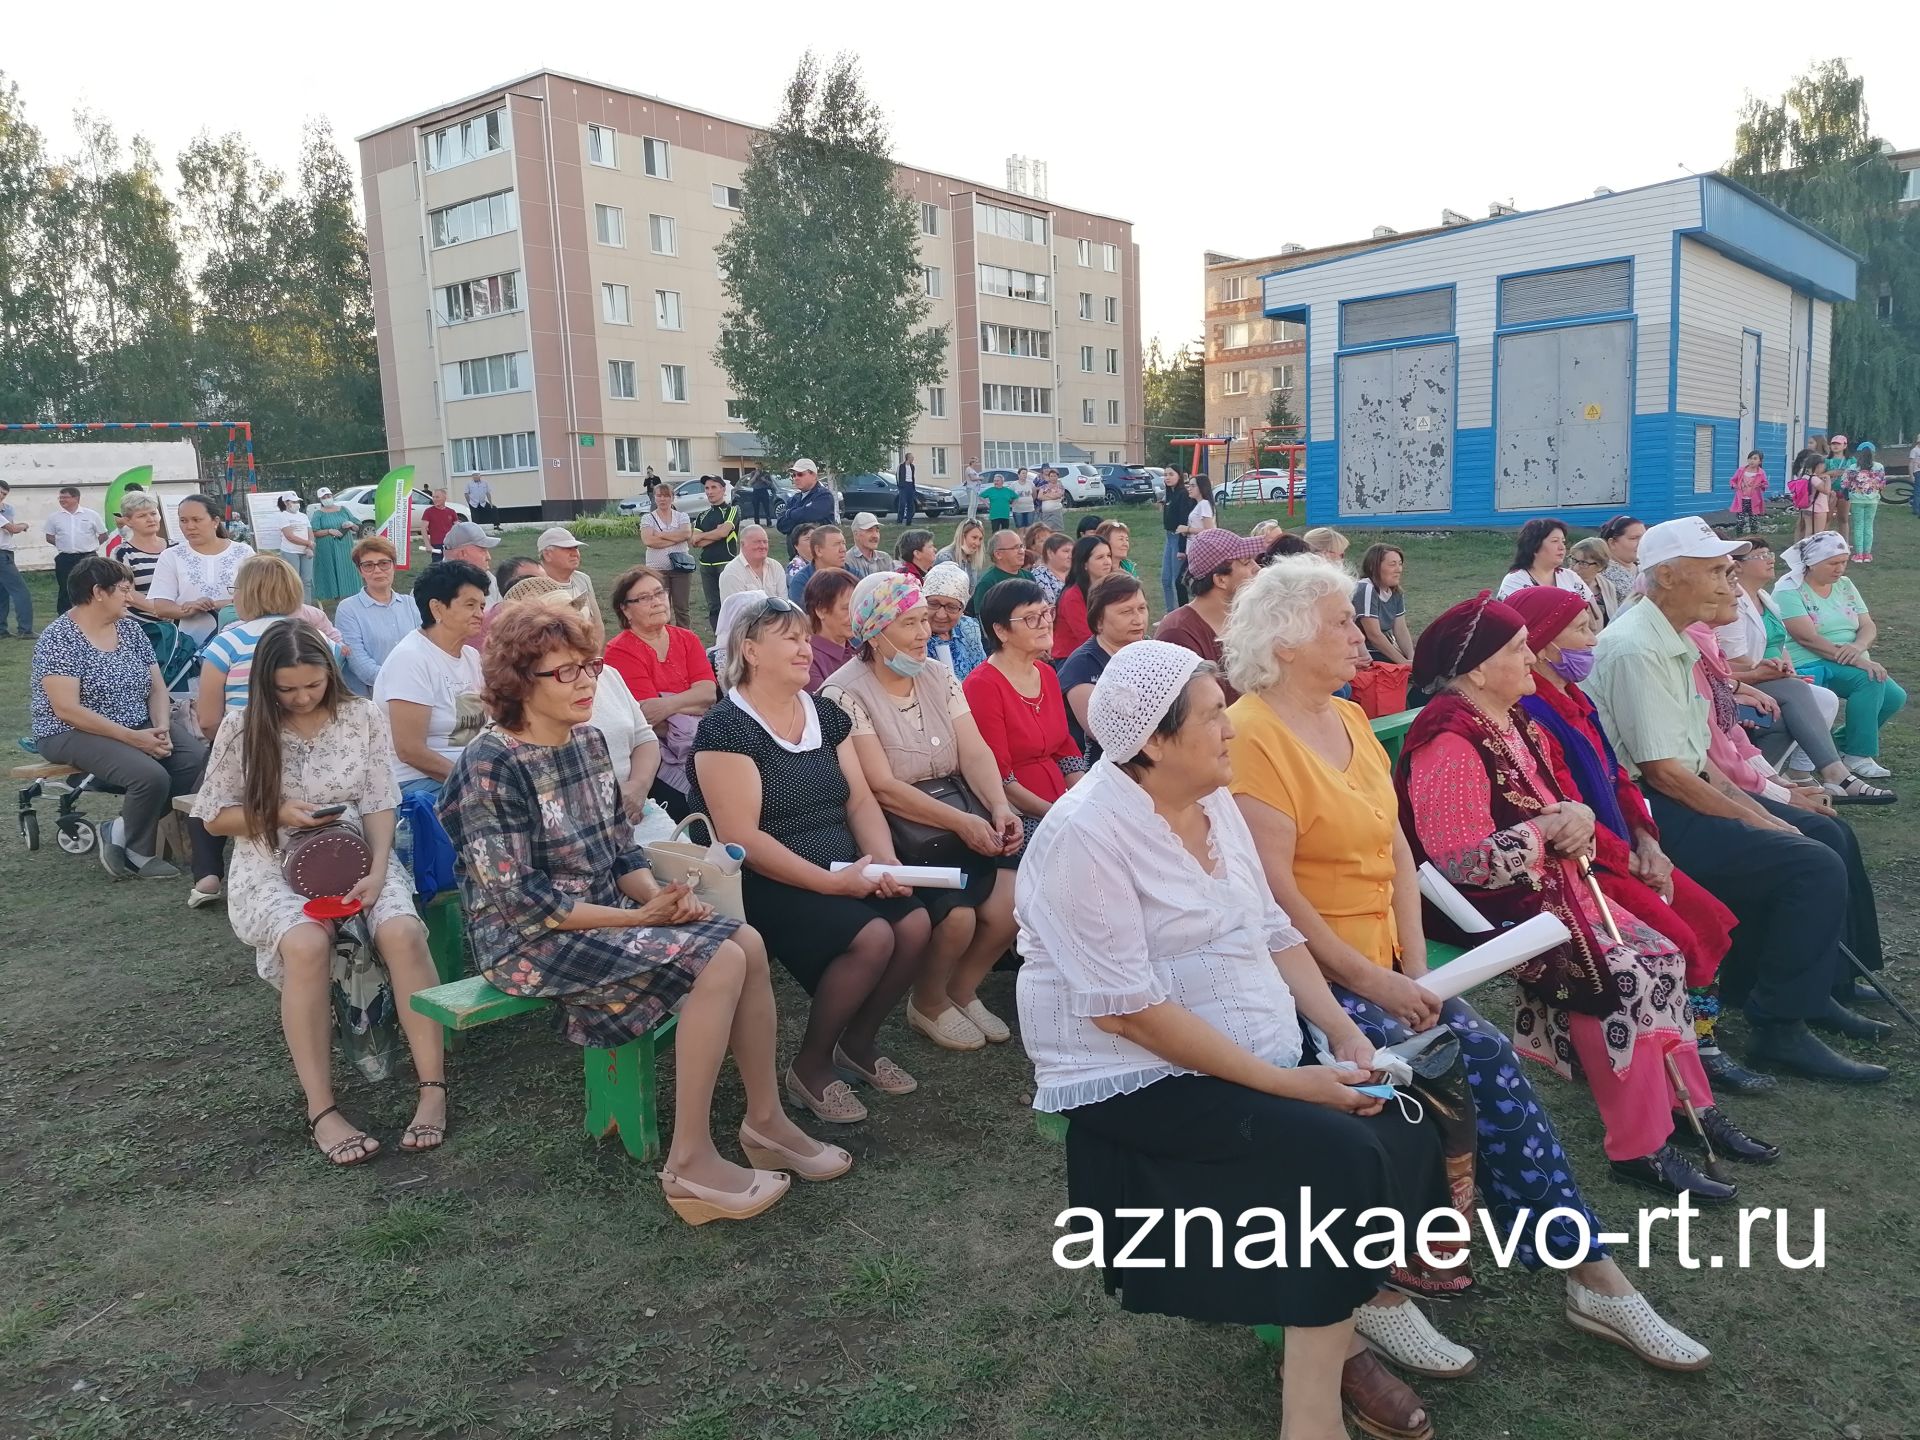 Праздник двора в микрорайоне Тукая города Азнакаево удался на славу